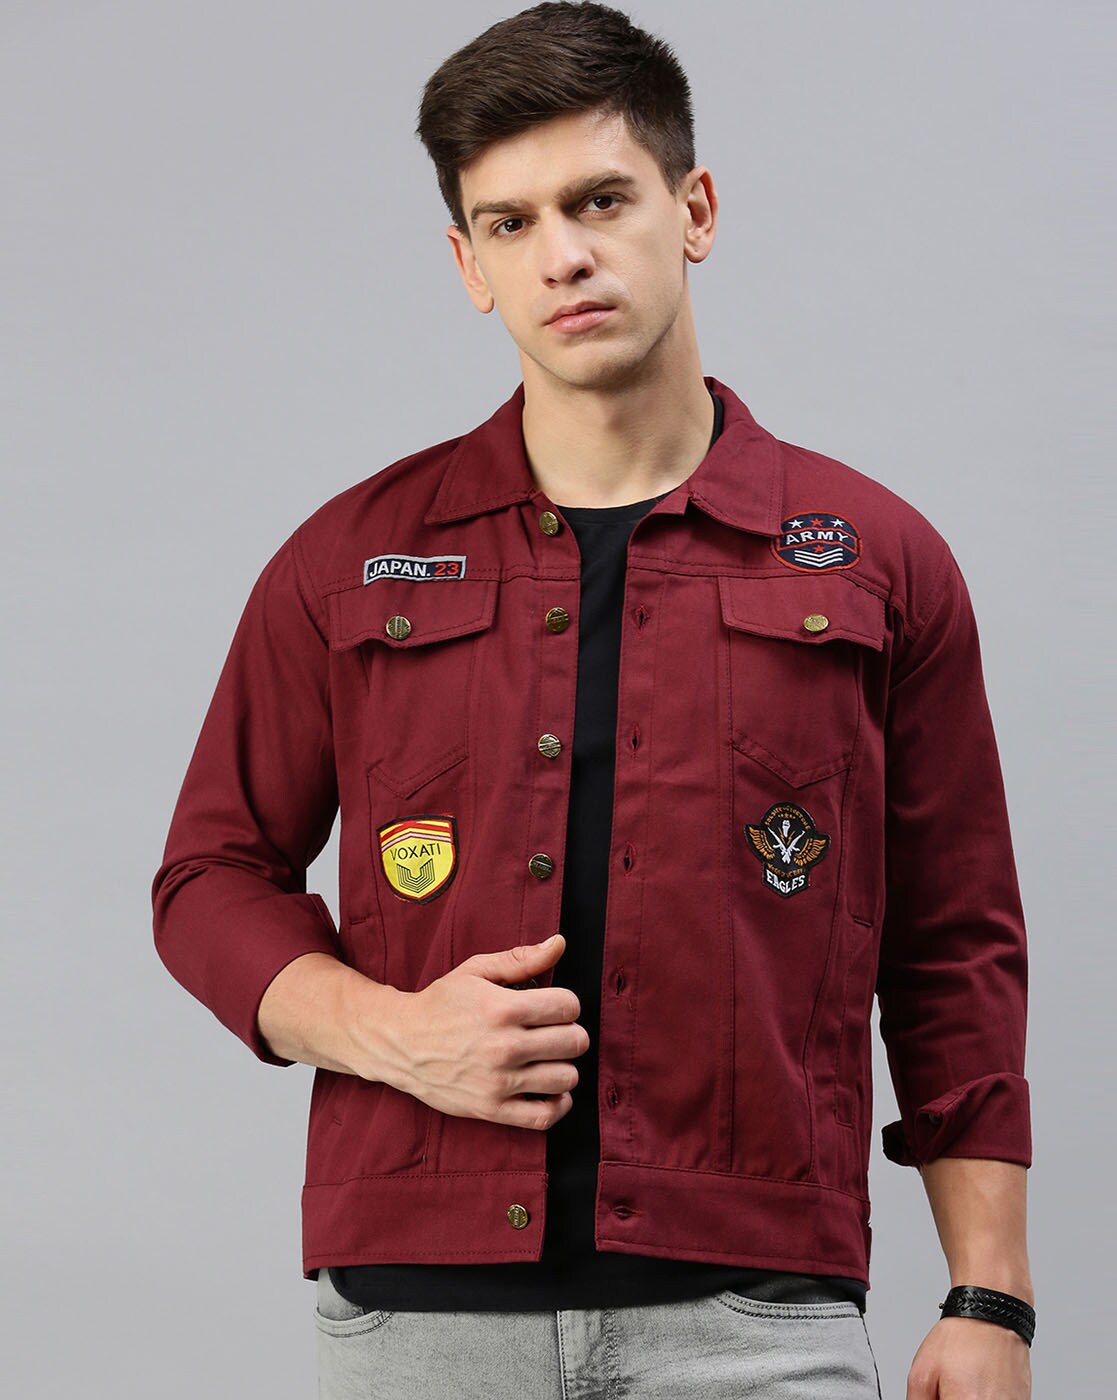 Buy VOXATI Men's Denim Jacket kjt314xy-s_Black # 1_S at Amazon.in